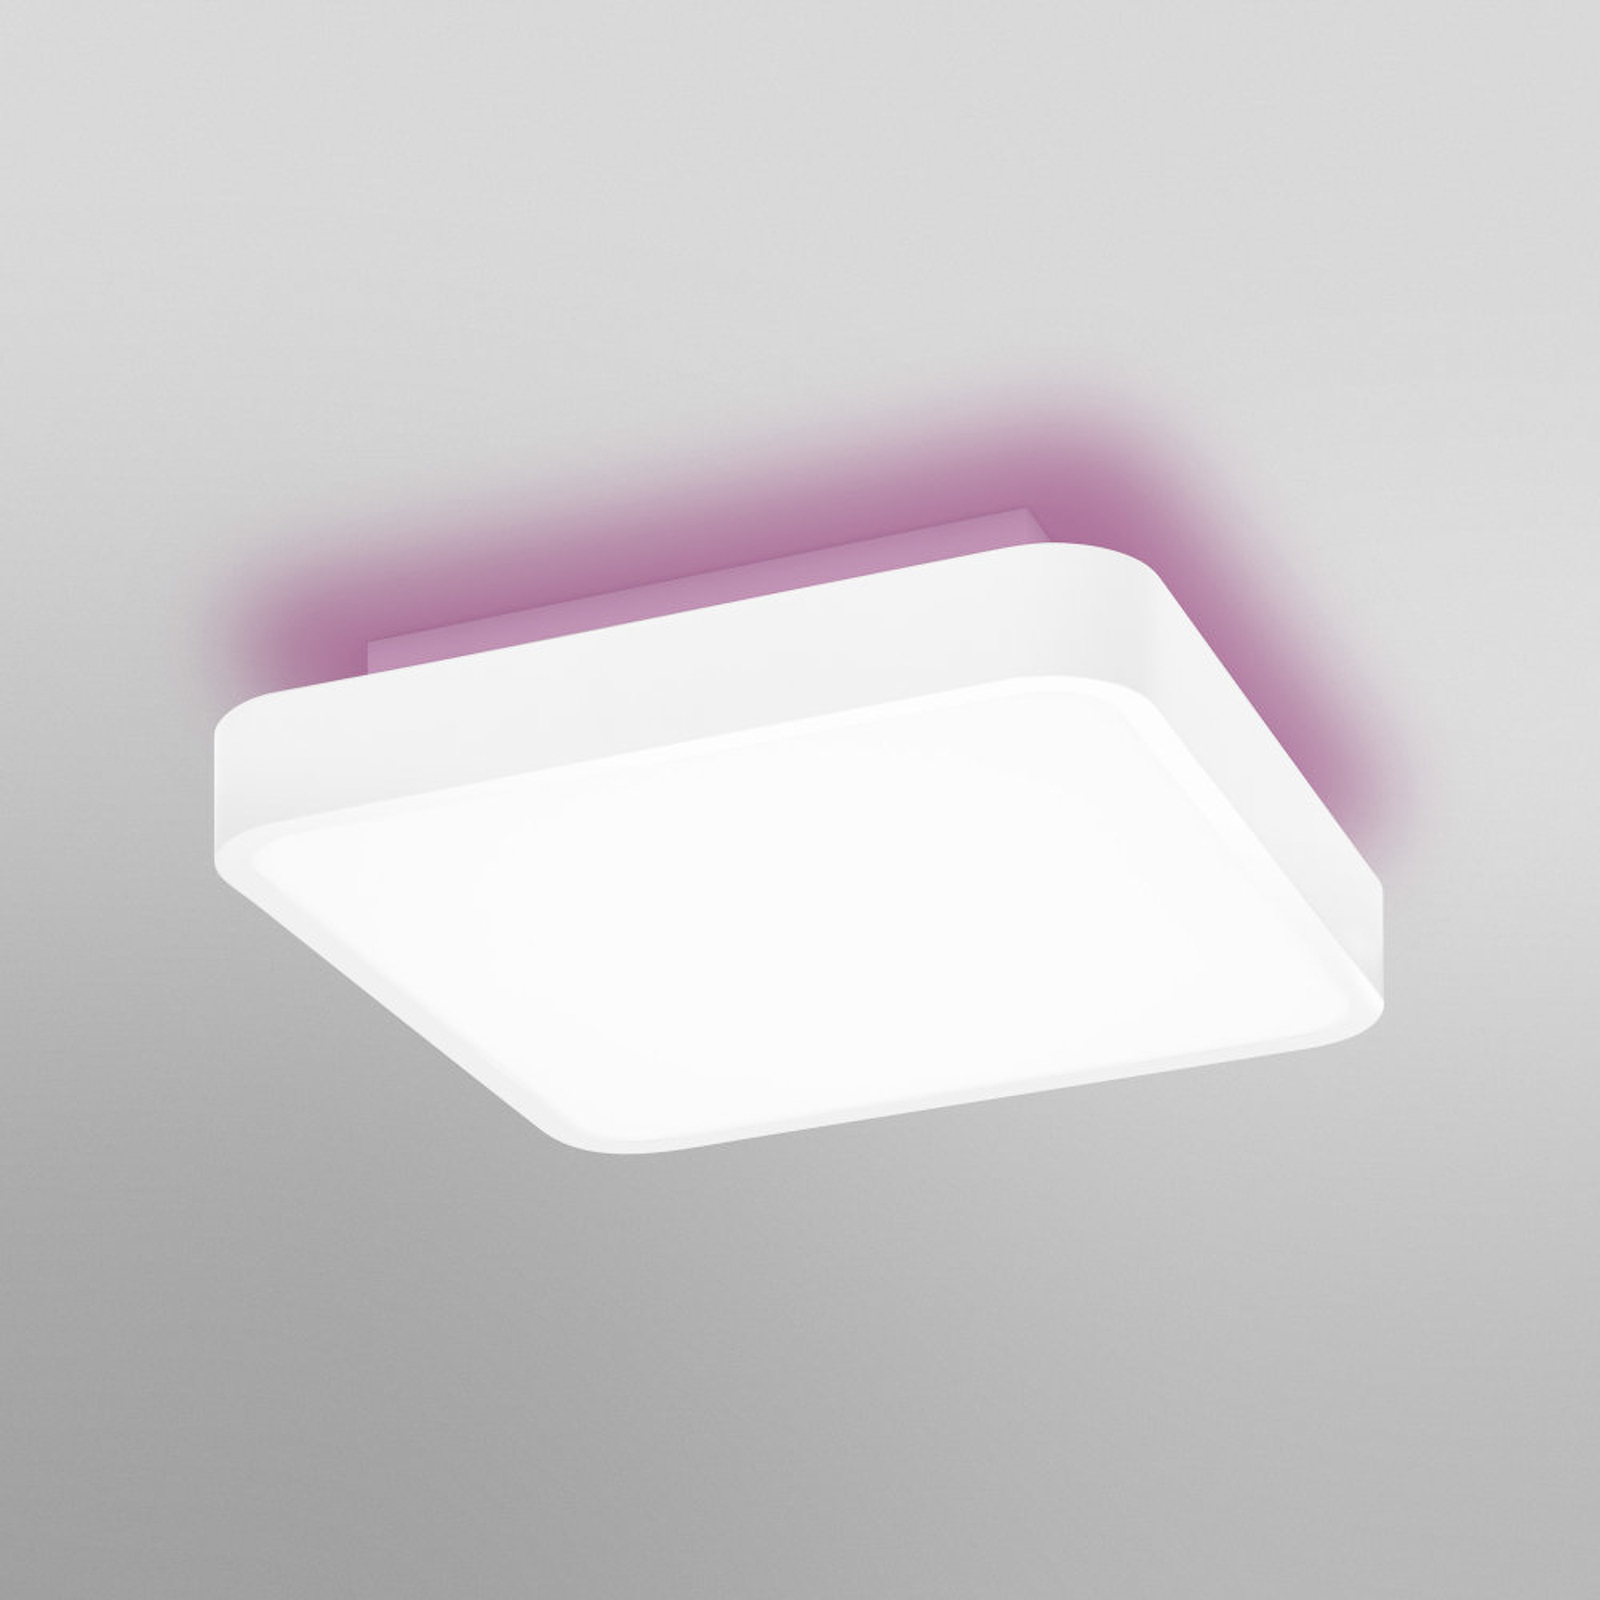 LEDVANCE SMART+ WiFi Orbis Backlight hvit 35x35 cm